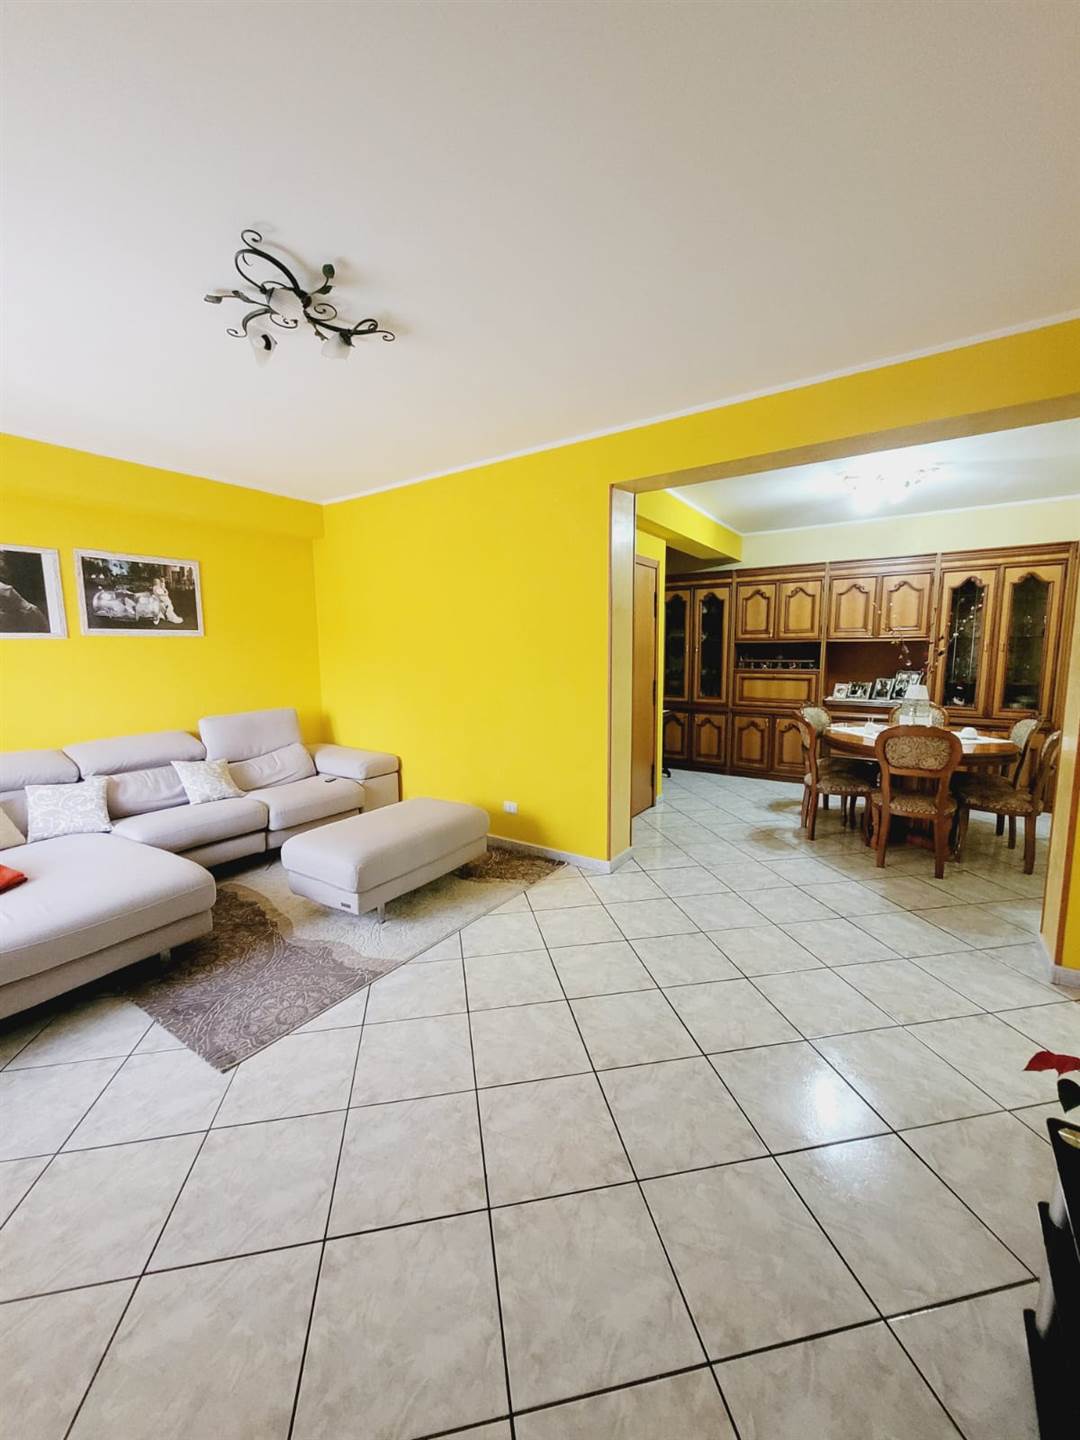 Appartamento in vendita a Belpasso, 5 locali, prezzo € 117.000 | PortaleAgenzieImmobiliari.it